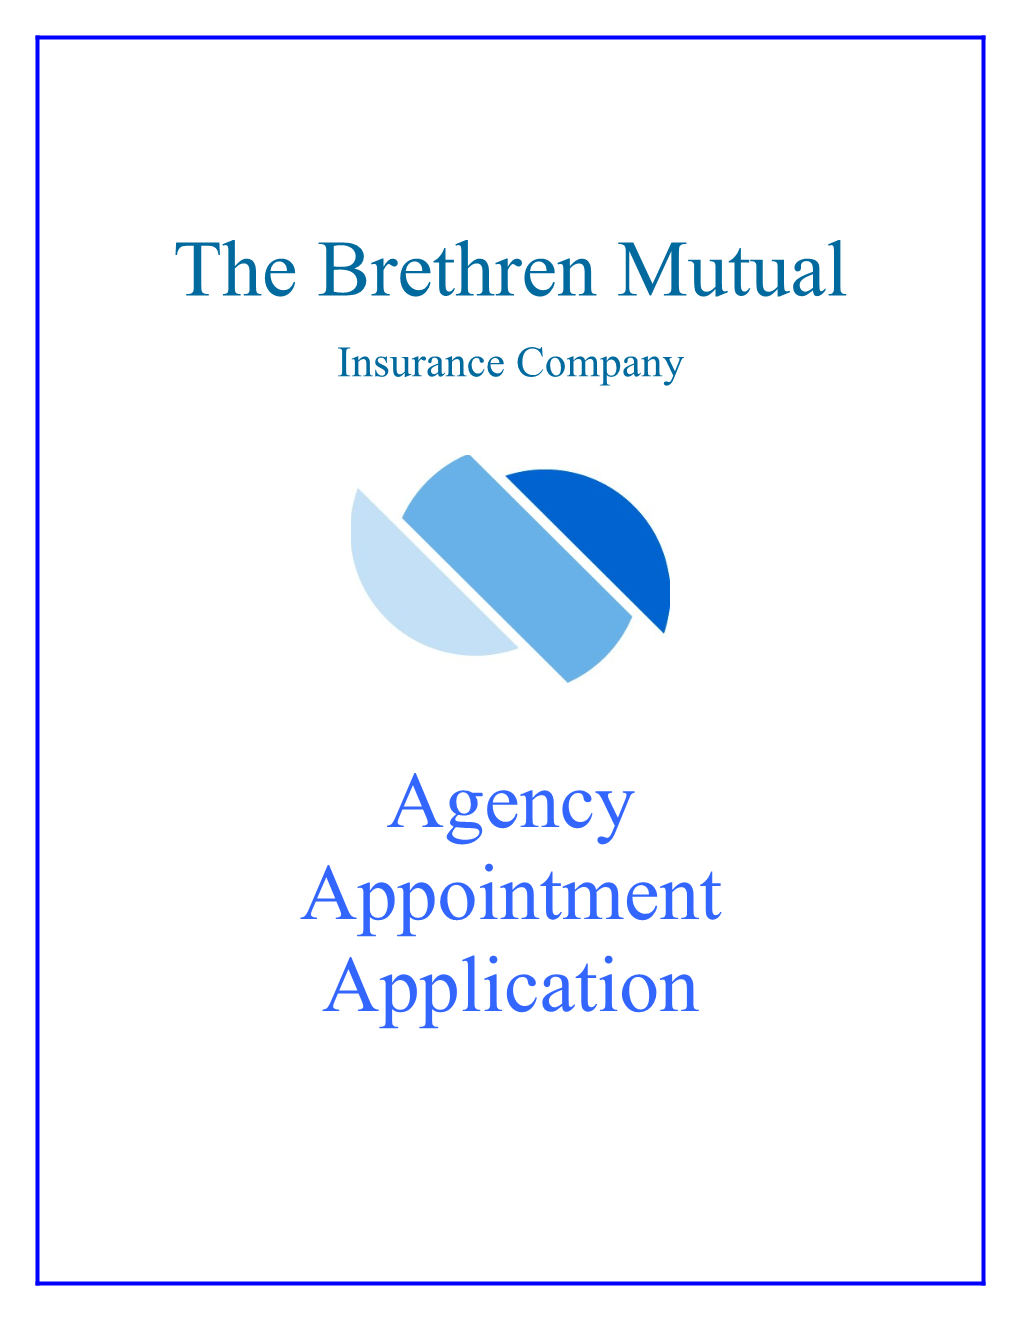 The Brethren Mutual Insurance Company